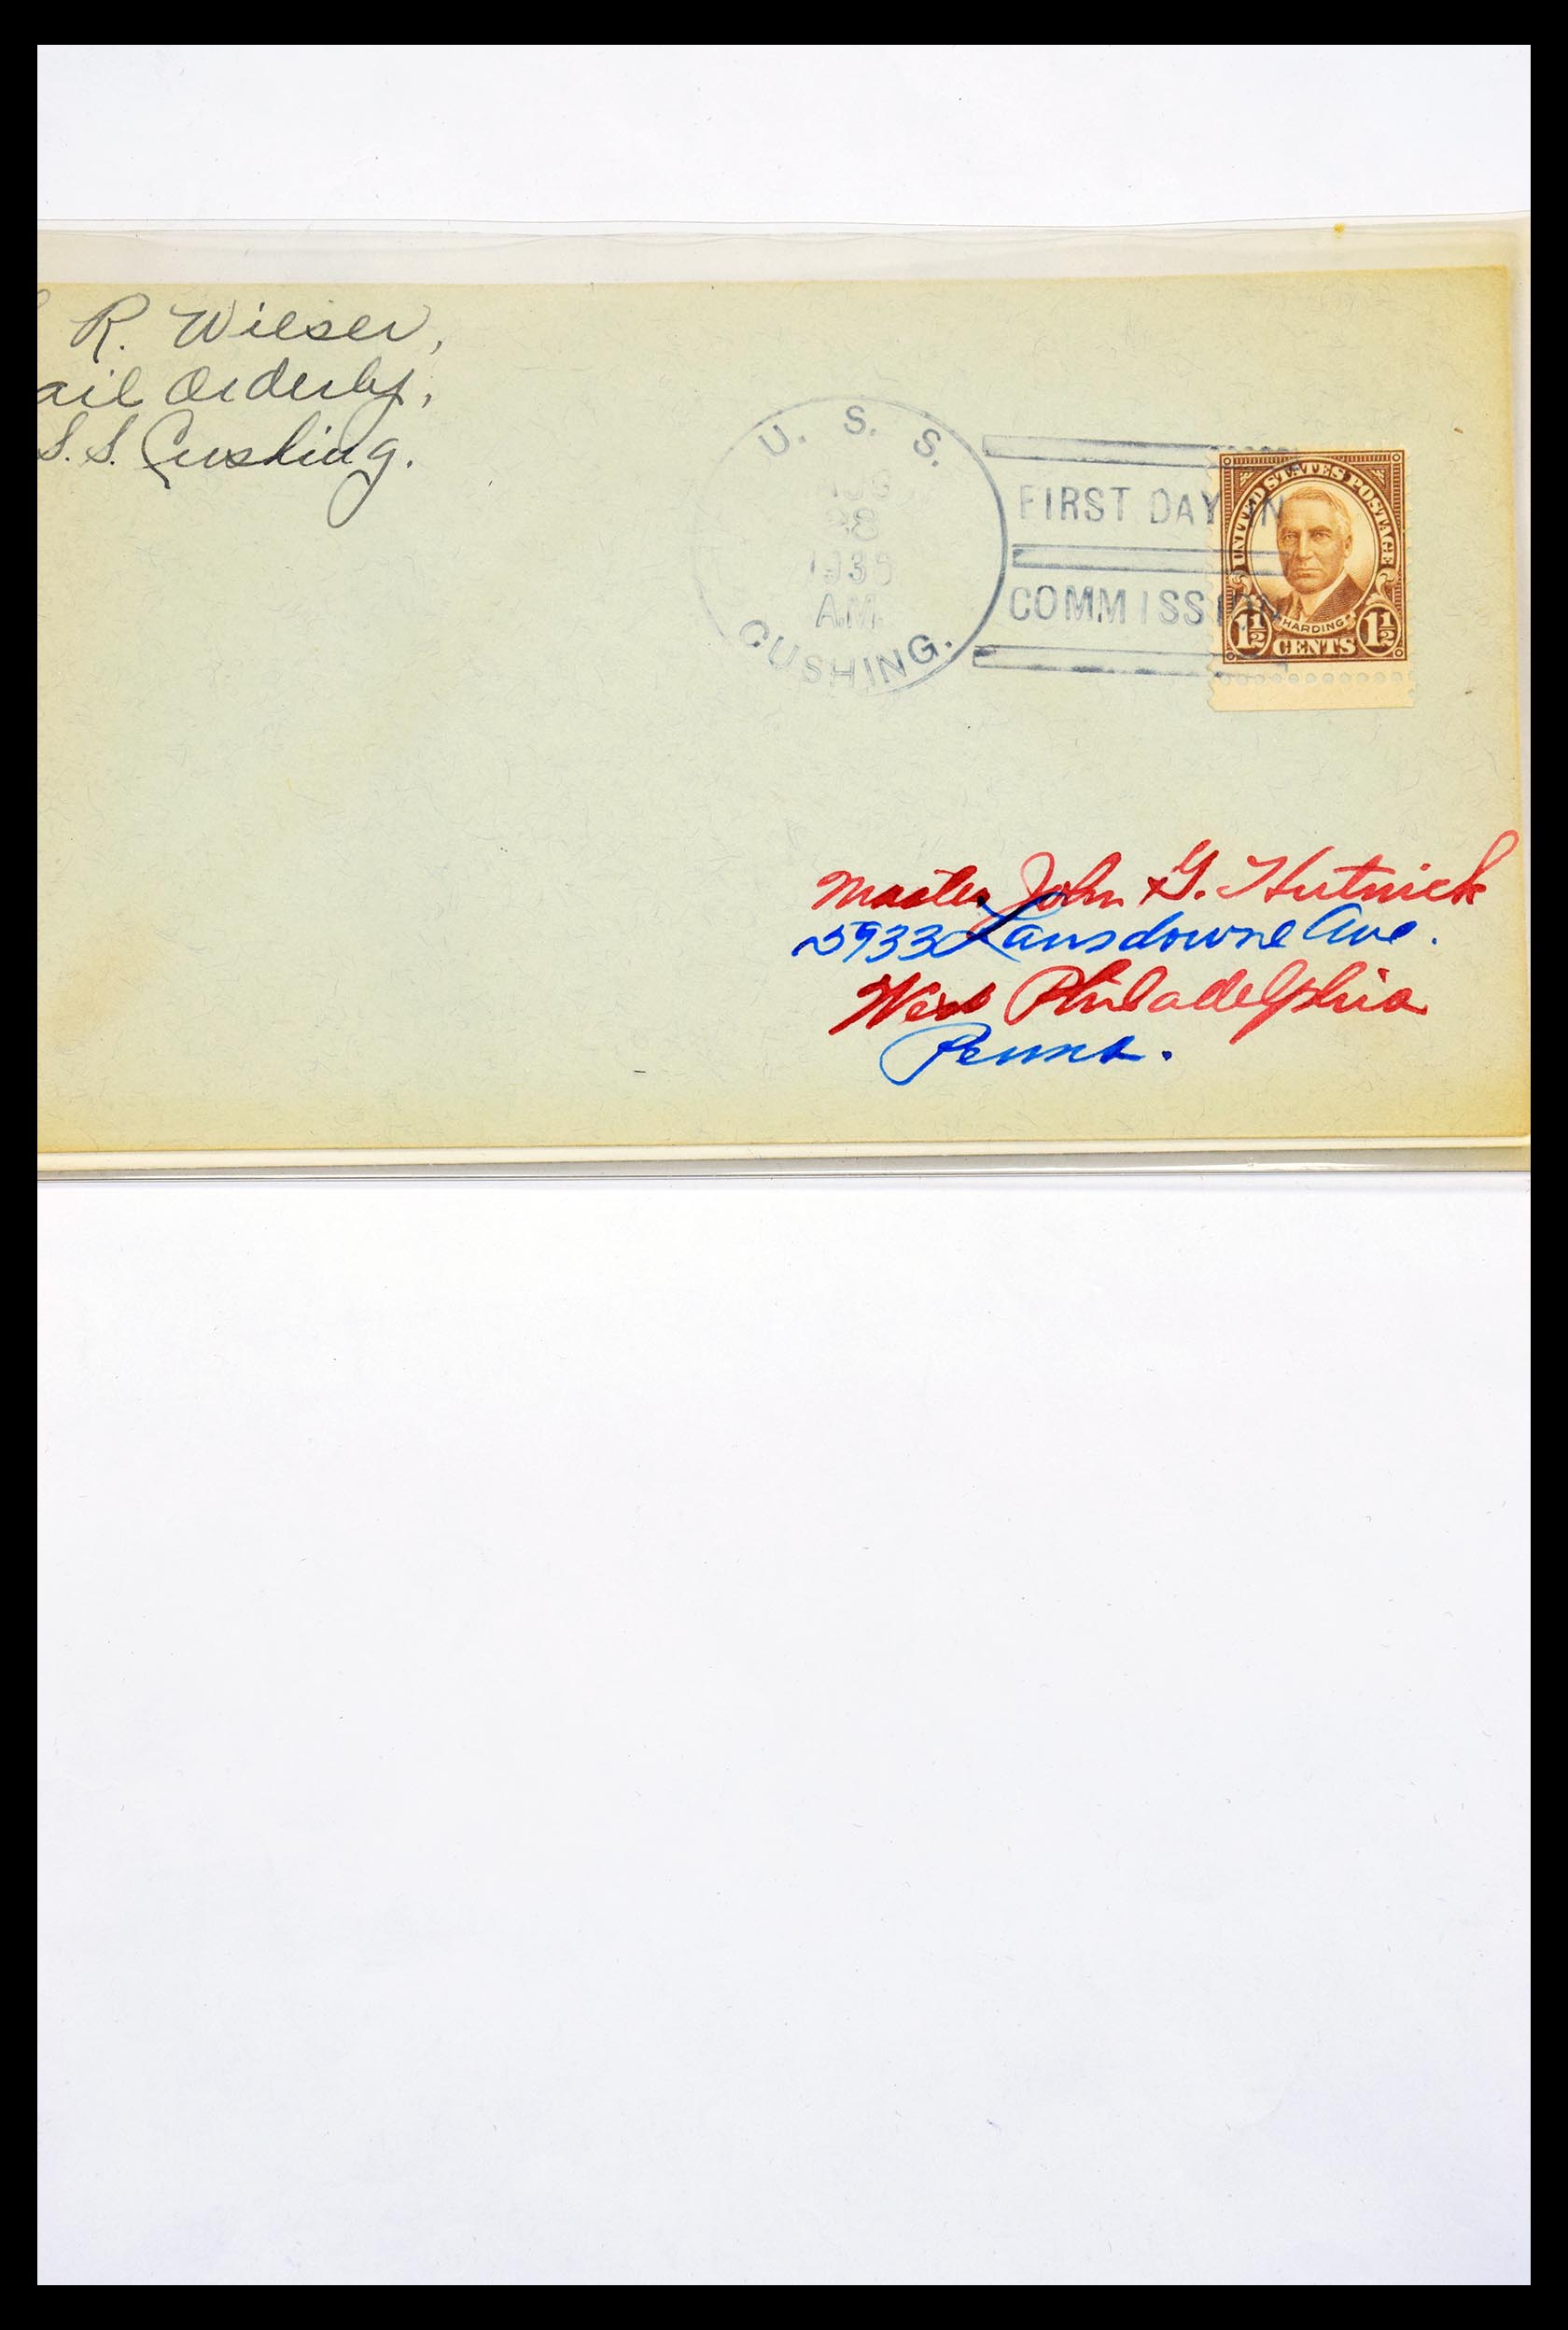 30341 291 - 30341 USA scheepspost brieven 1930-1970.